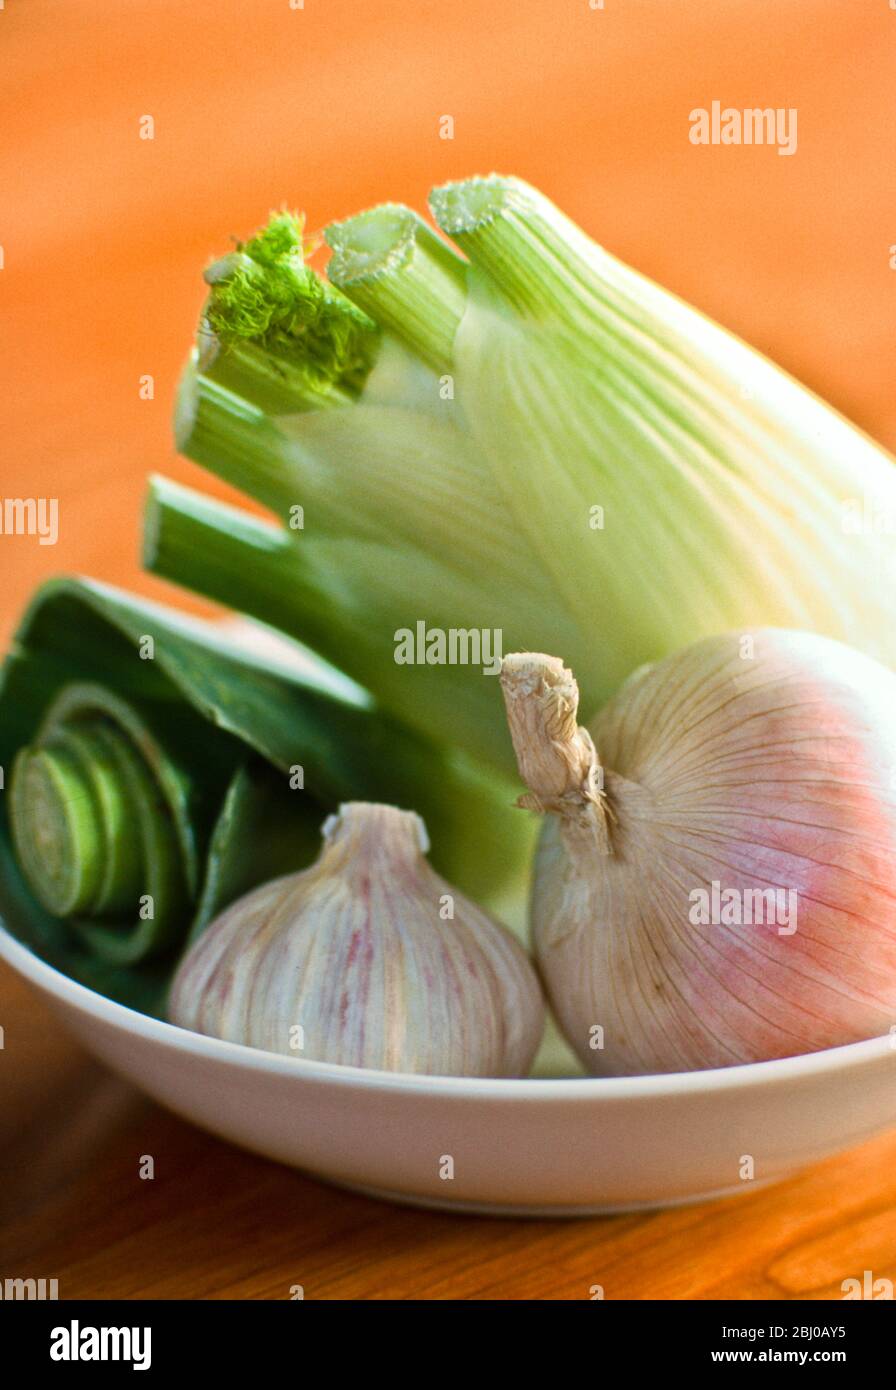 Eine Auswahl an frischem Gemüse, Fenchel, weißen Zwiebeln, Knoblauch und Lauch - Stockfoto